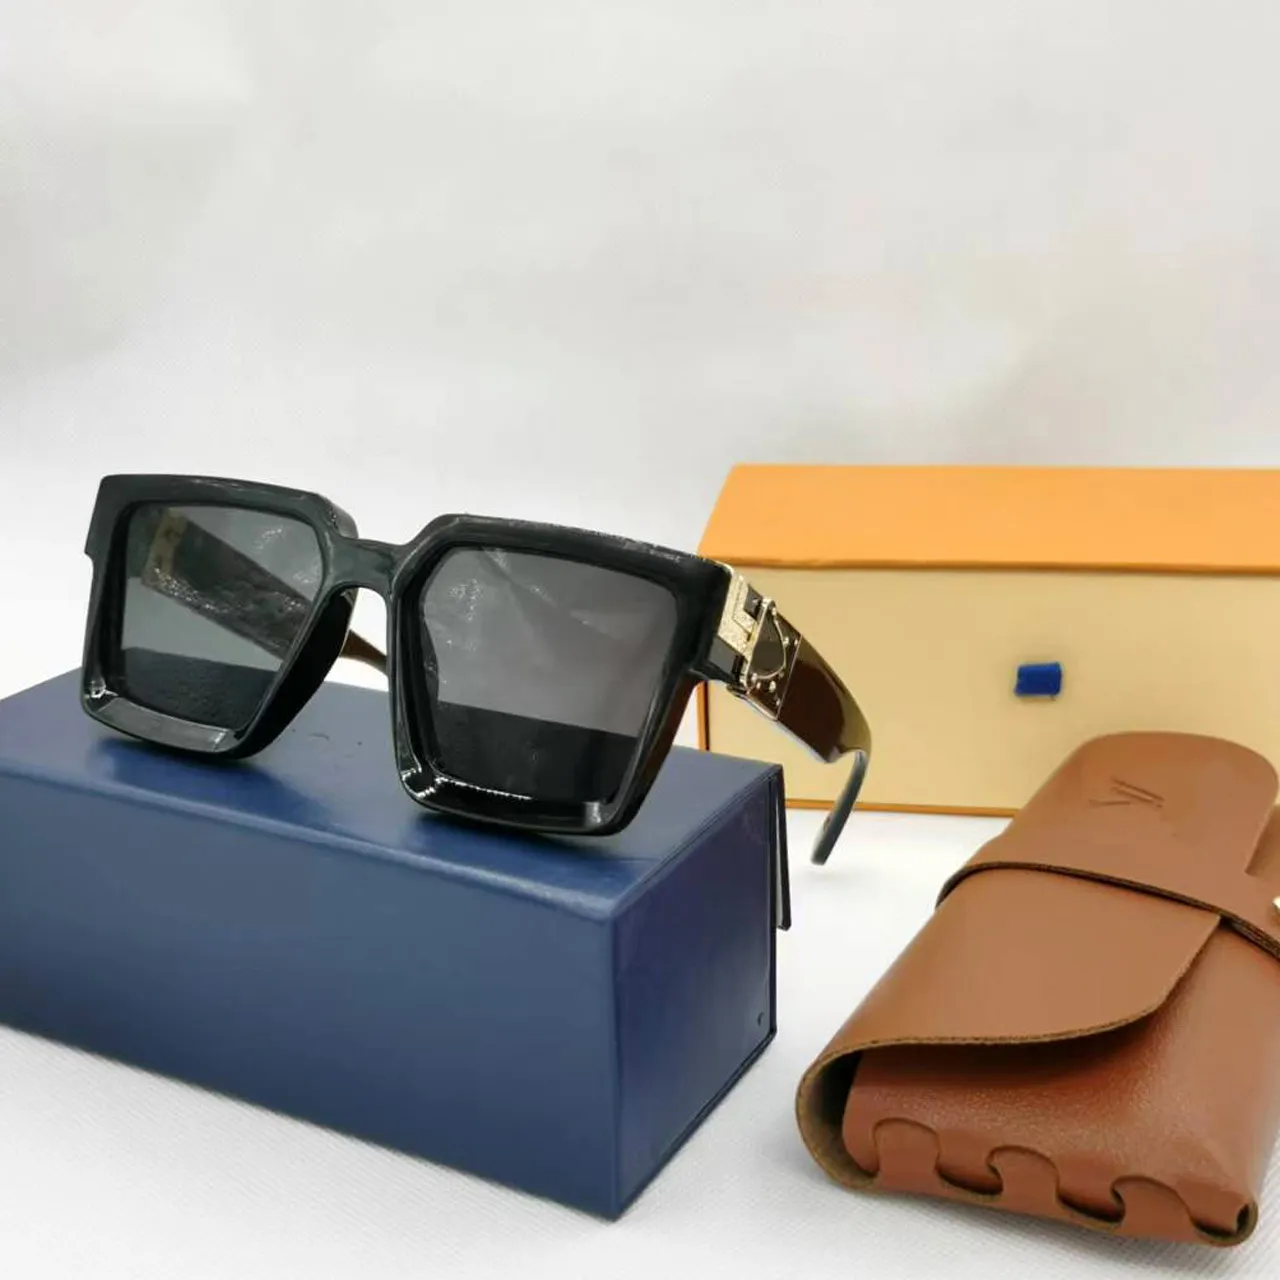 أزياء العلامة التجارية ظلة الرجال النظارات الشمسية الفاخرة مصمم النظارات الشمسية L- إلكتروني النظارات الإطار الزجاجي حمض الخليك النظارات الشمسية النساء